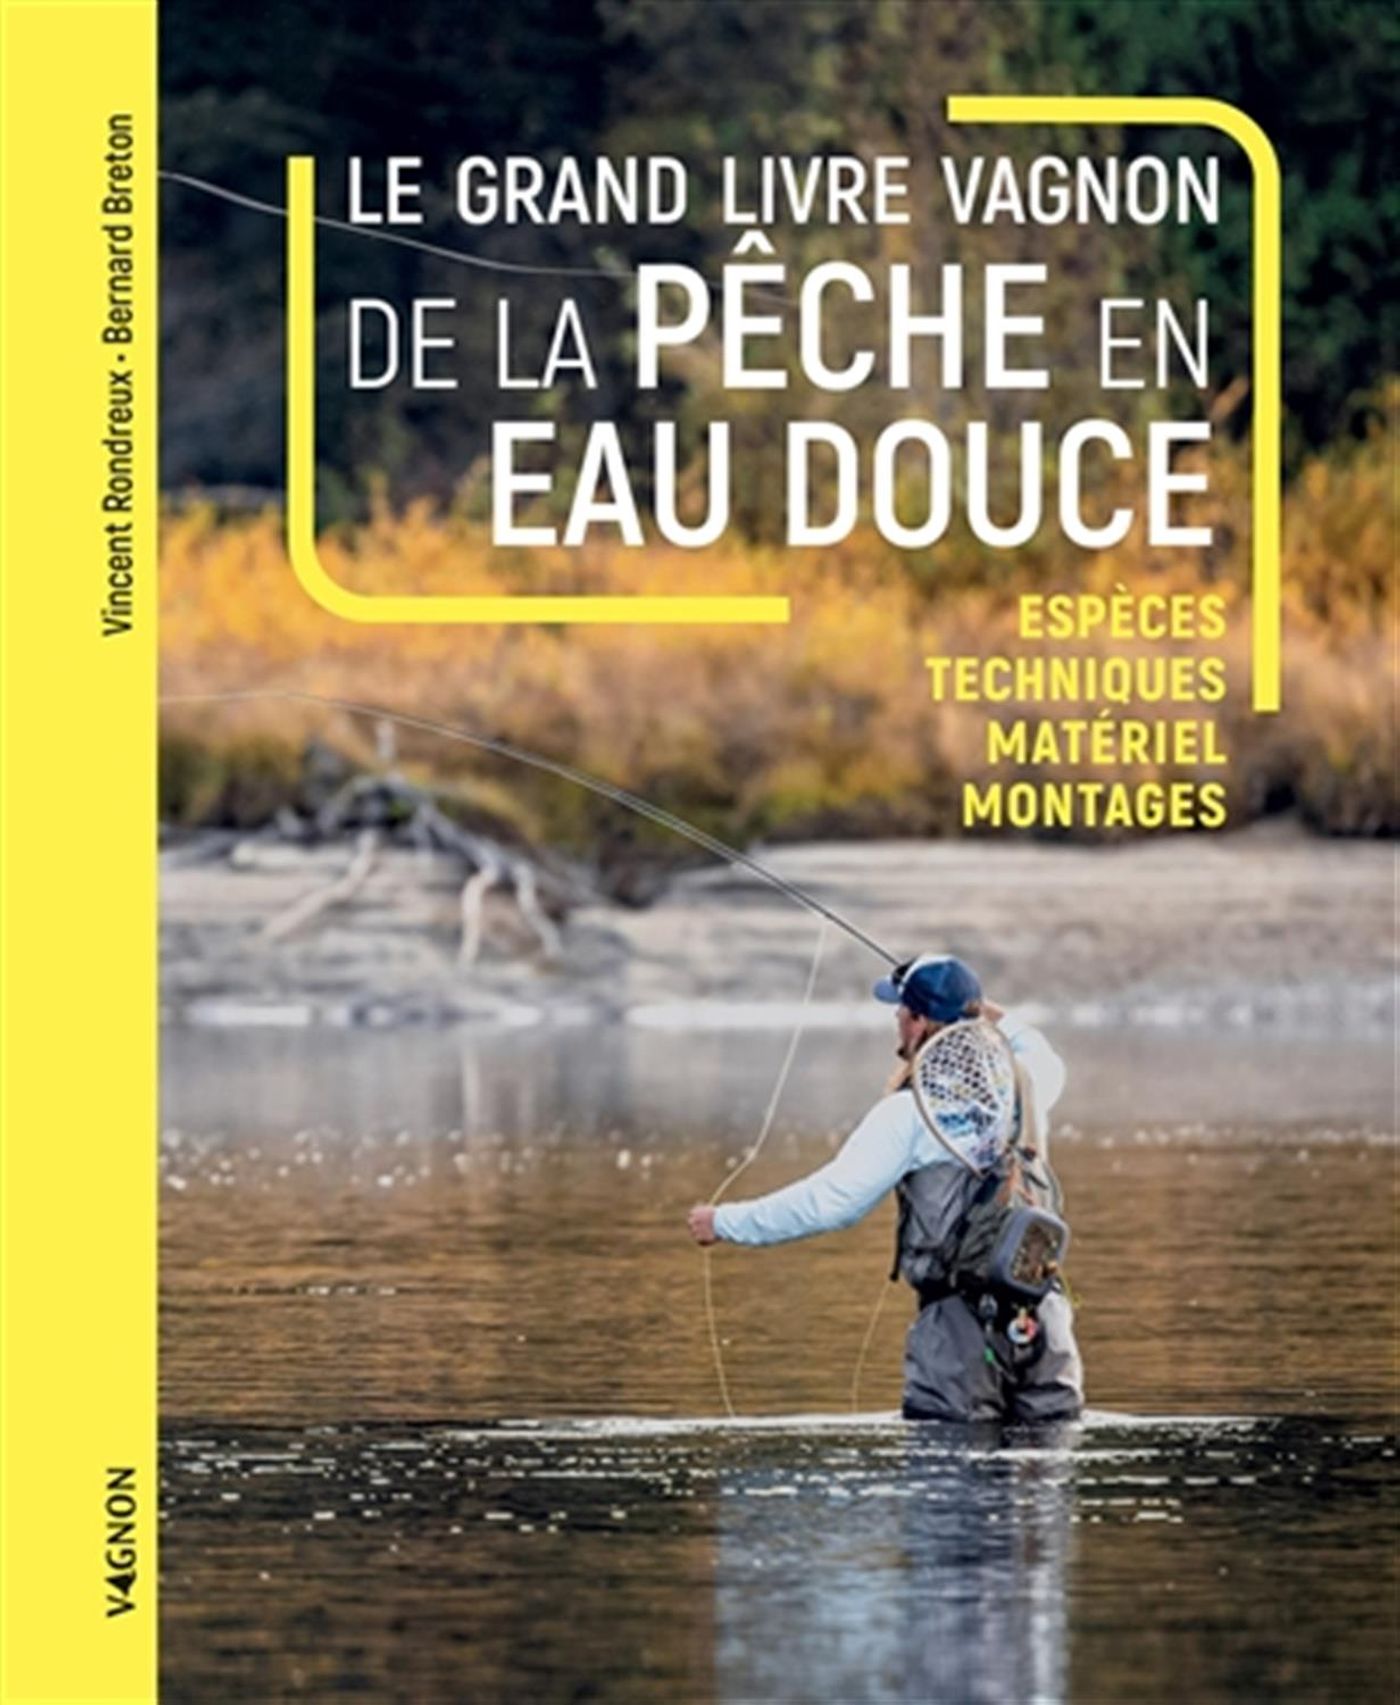 Guide visuel de la pêche en eau douce et en mer - Éditions Vagnon